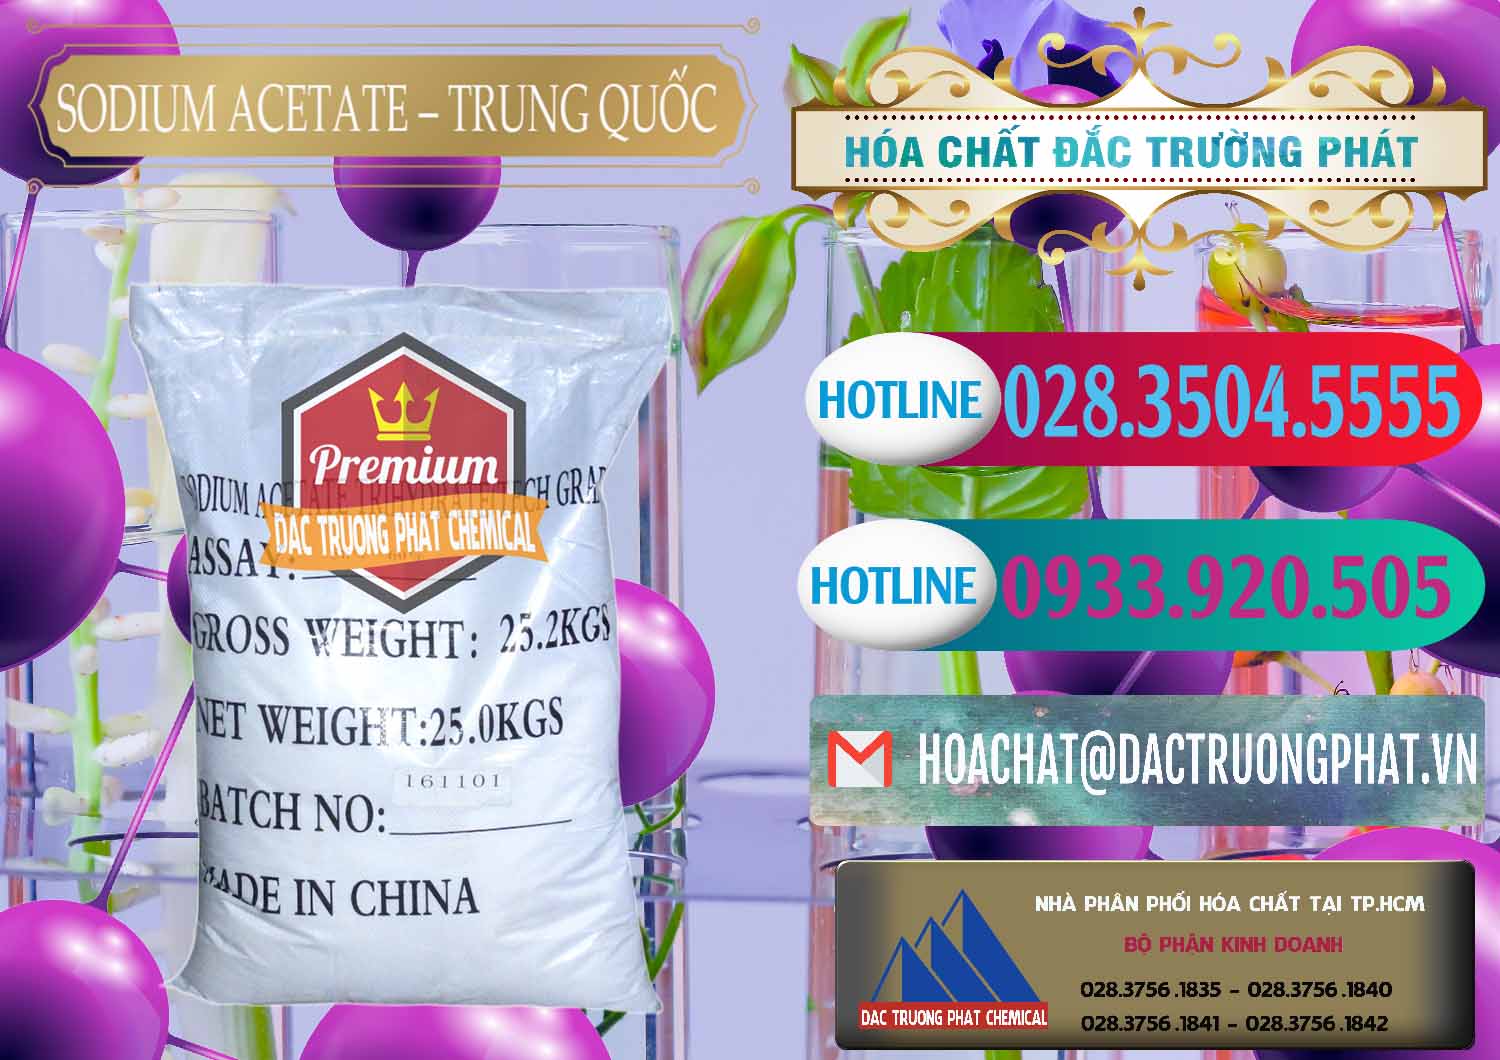 Công ty chuyên cung cấp và bán Sodium Acetate - Natri Acetate Trung Quốc China - 0134 - Chuyên bán & cung cấp hóa chất tại TP.HCM - truongphat.vn